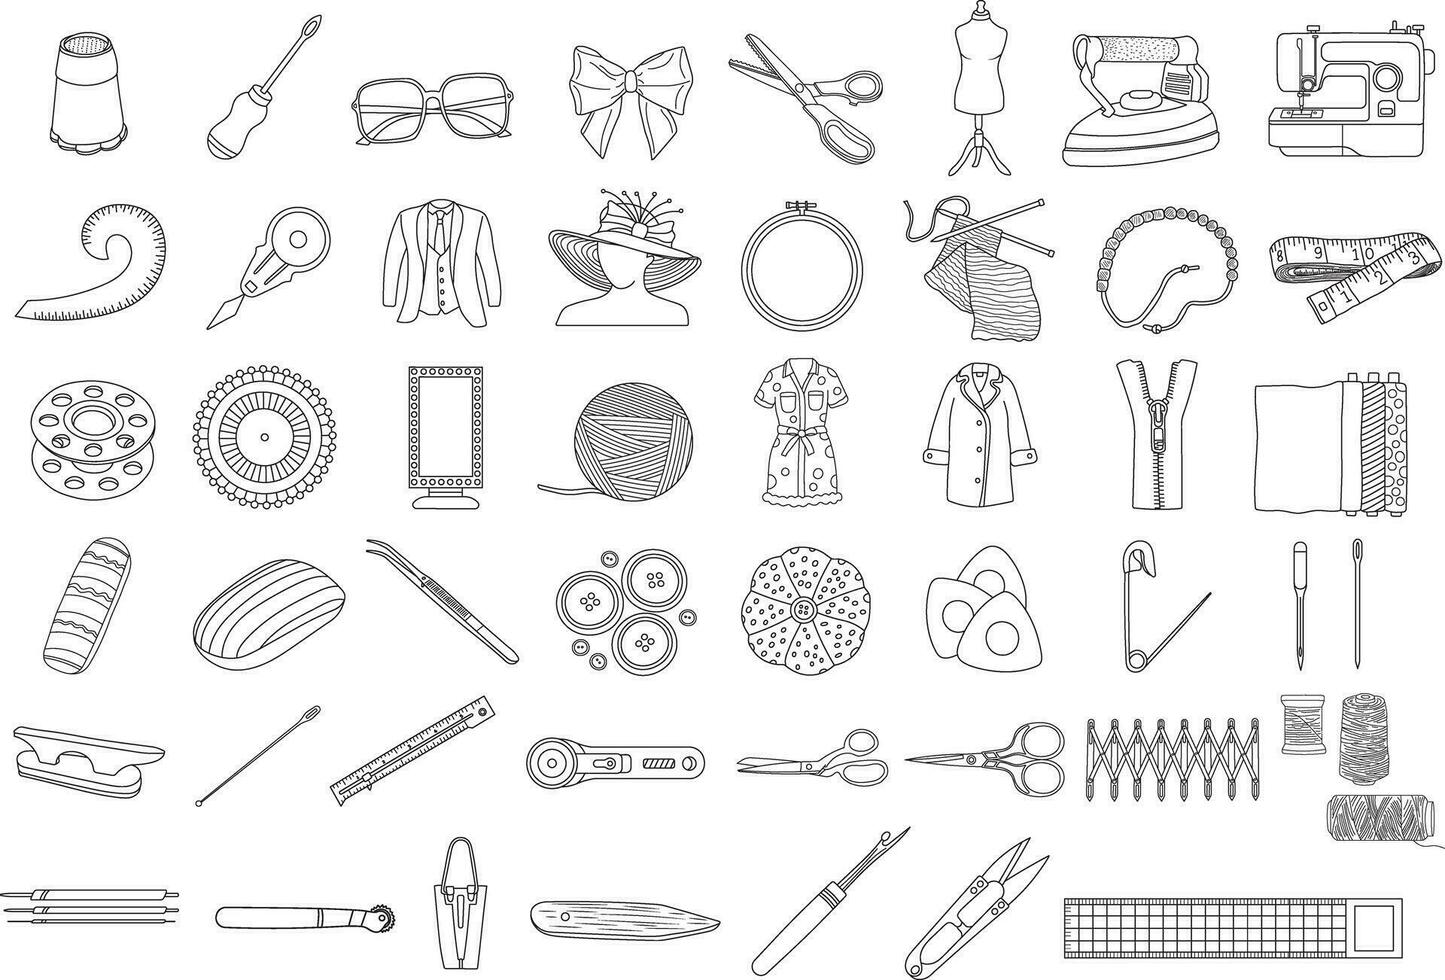 mano dibujado vector colección de ilustraciones exhibiendo de coser, tejido de punto, y costura herramientas y materiales aislado en garabatear estilo